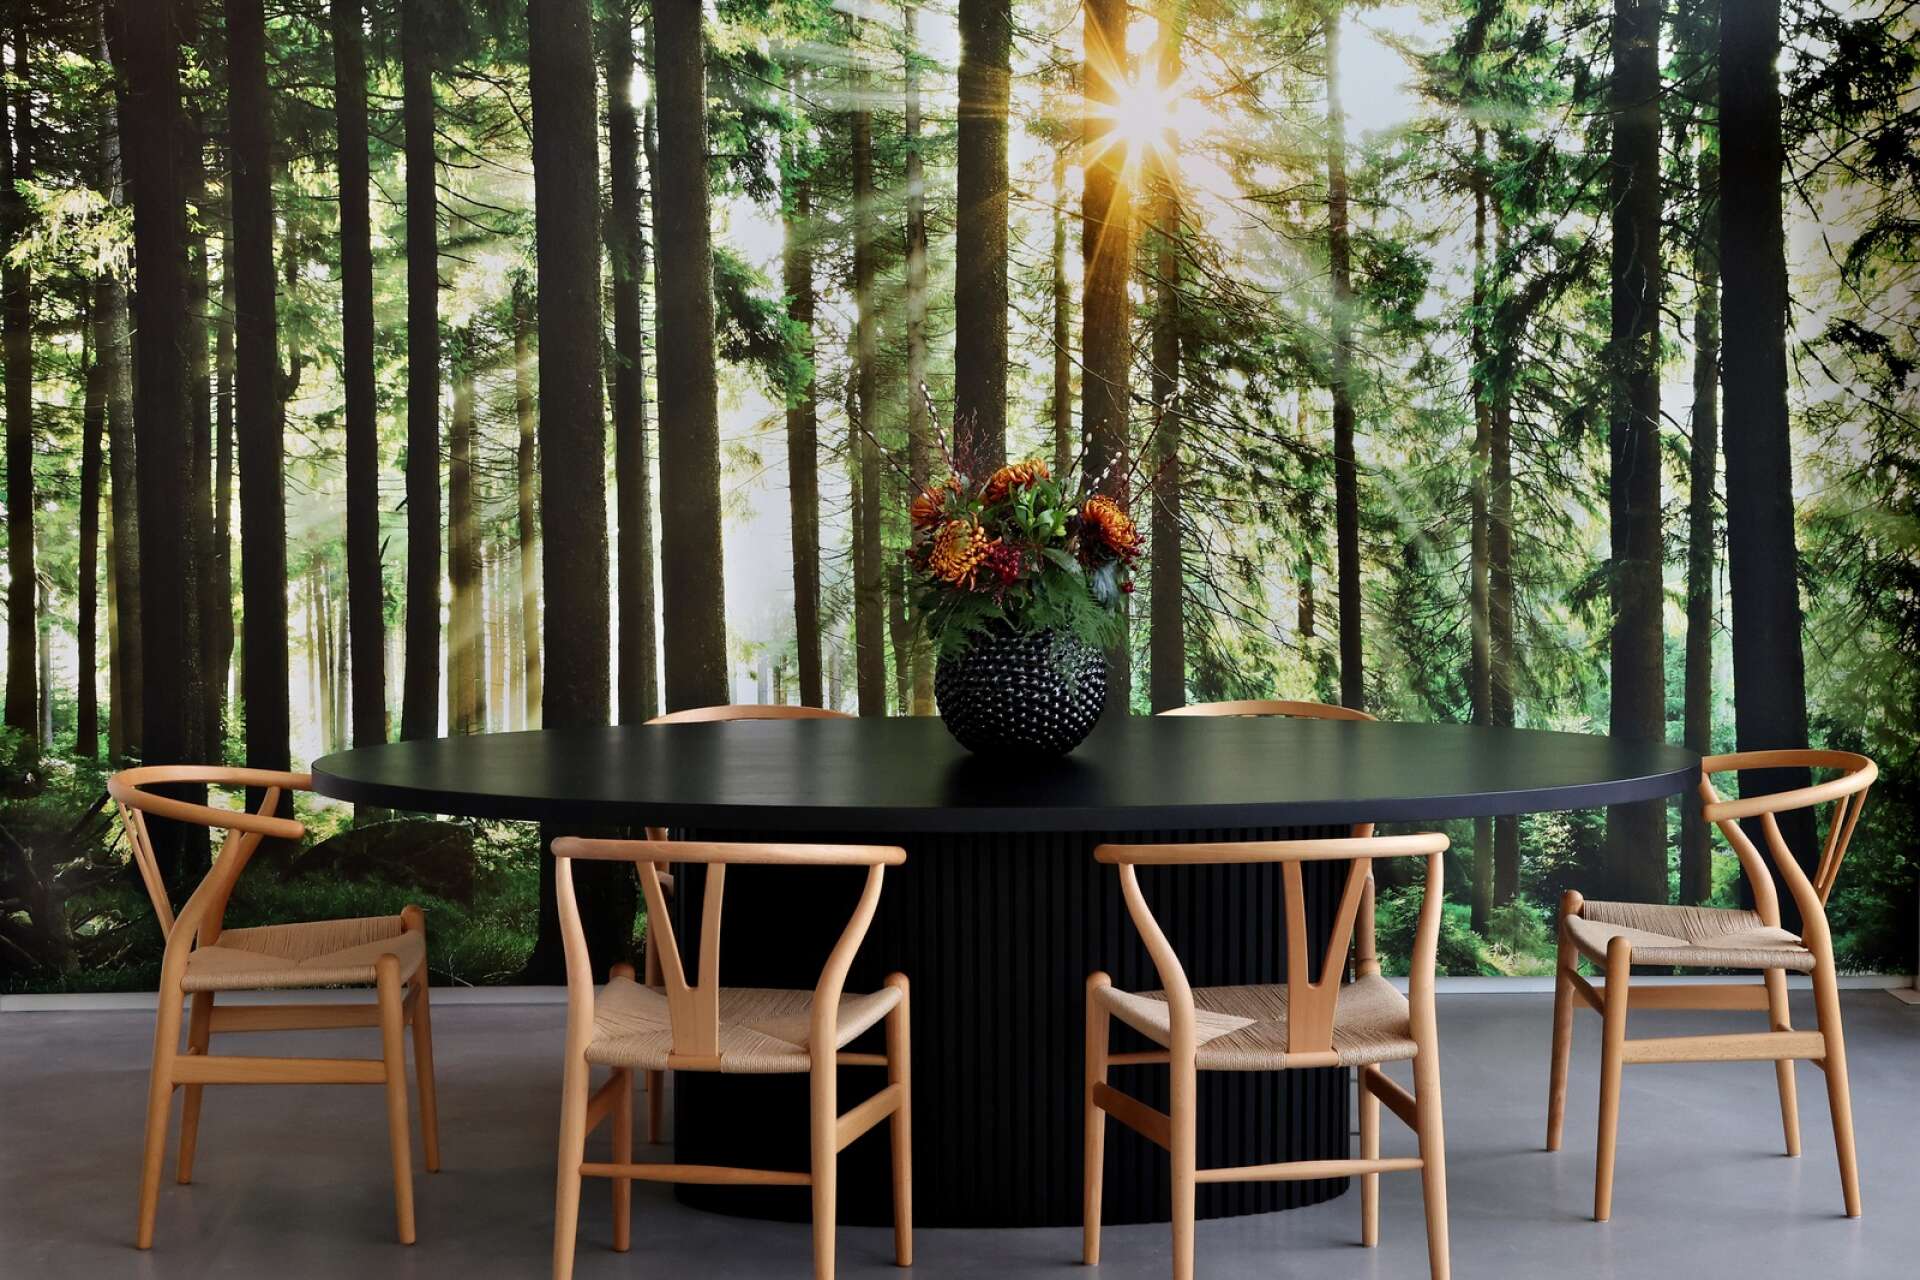 Måltiderna intas ”i skogen” på stolar formgivna av Hans J. Wegner.